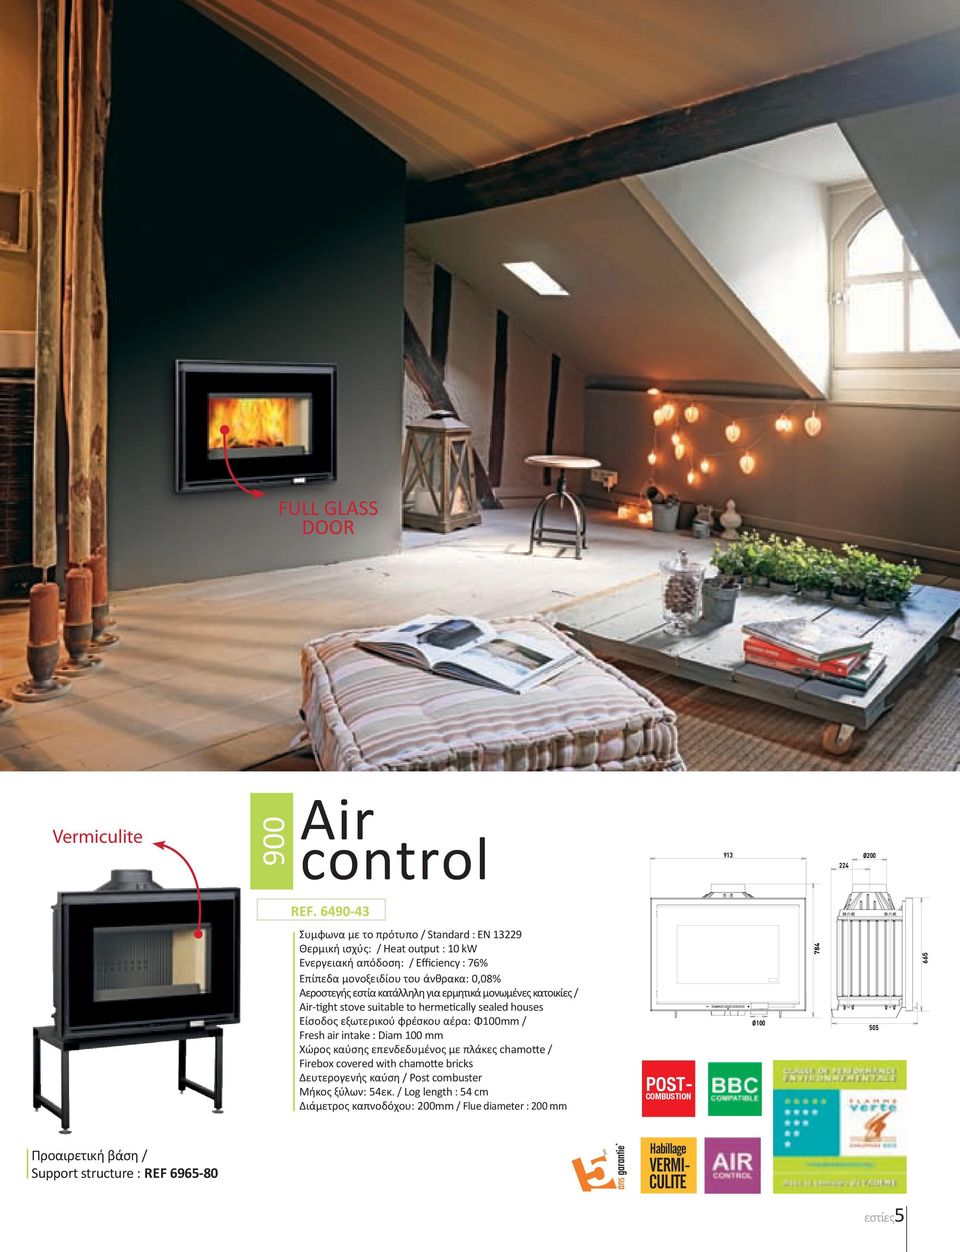 κατάλληλη για ερμητικά μονωμένες κατοικίες / Air-tight stove suitable to hermetically sealed houses Είσοδος εξωτερικού φρέσκου αέρα: Φ100mm / Fresh air intake : Diam 100 mm Χώρος καύσης